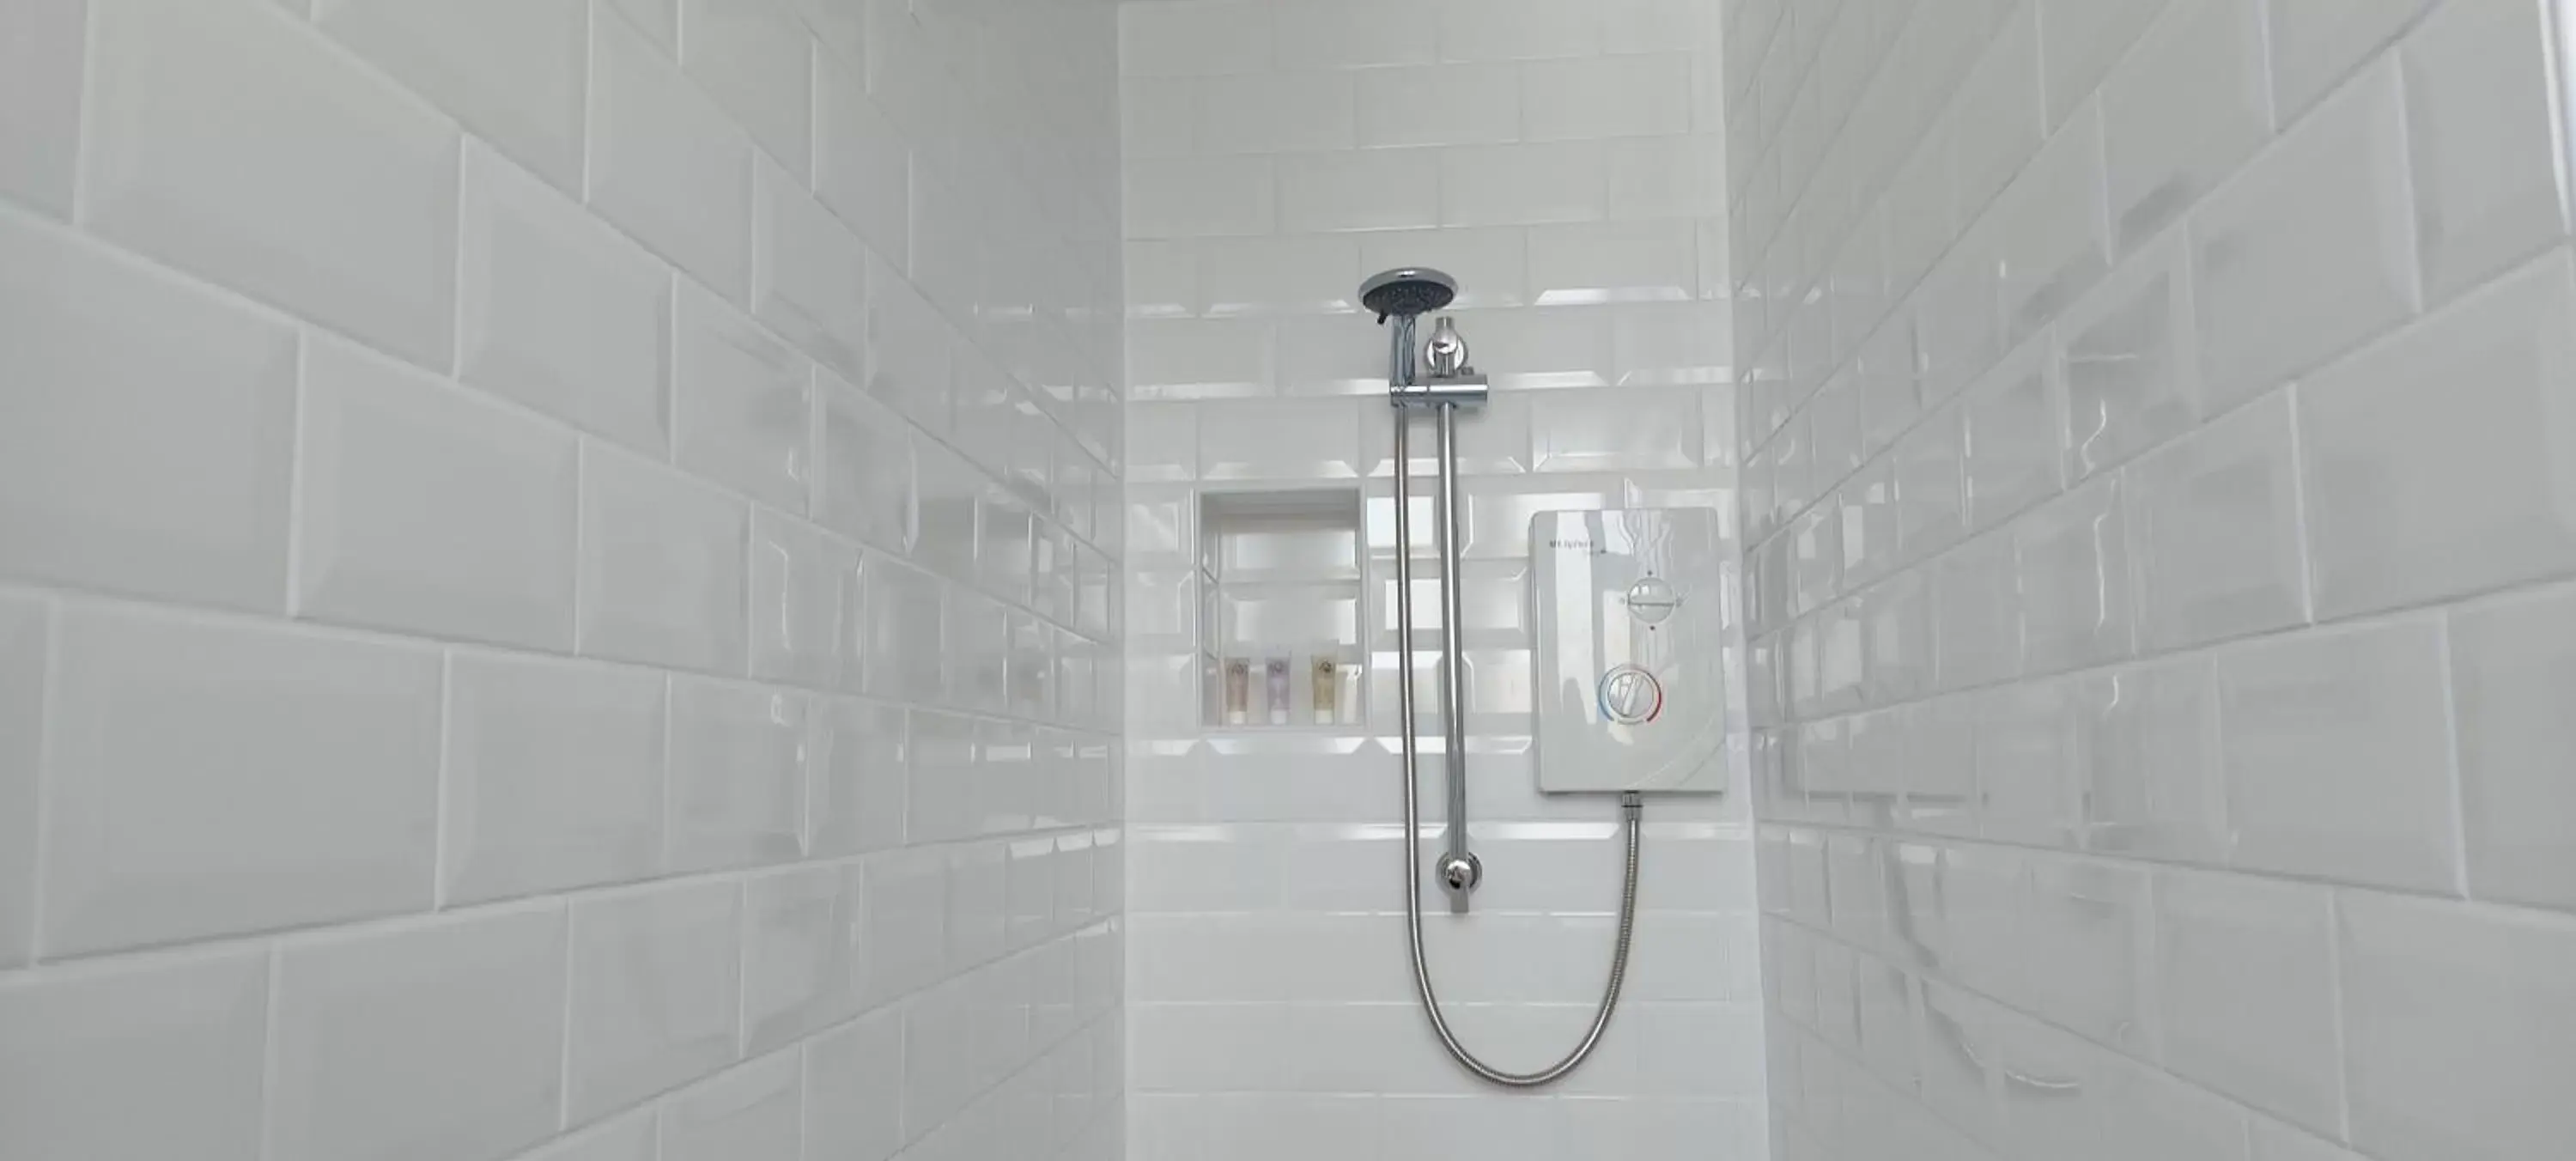 Shower, Bathroom in Trentham House